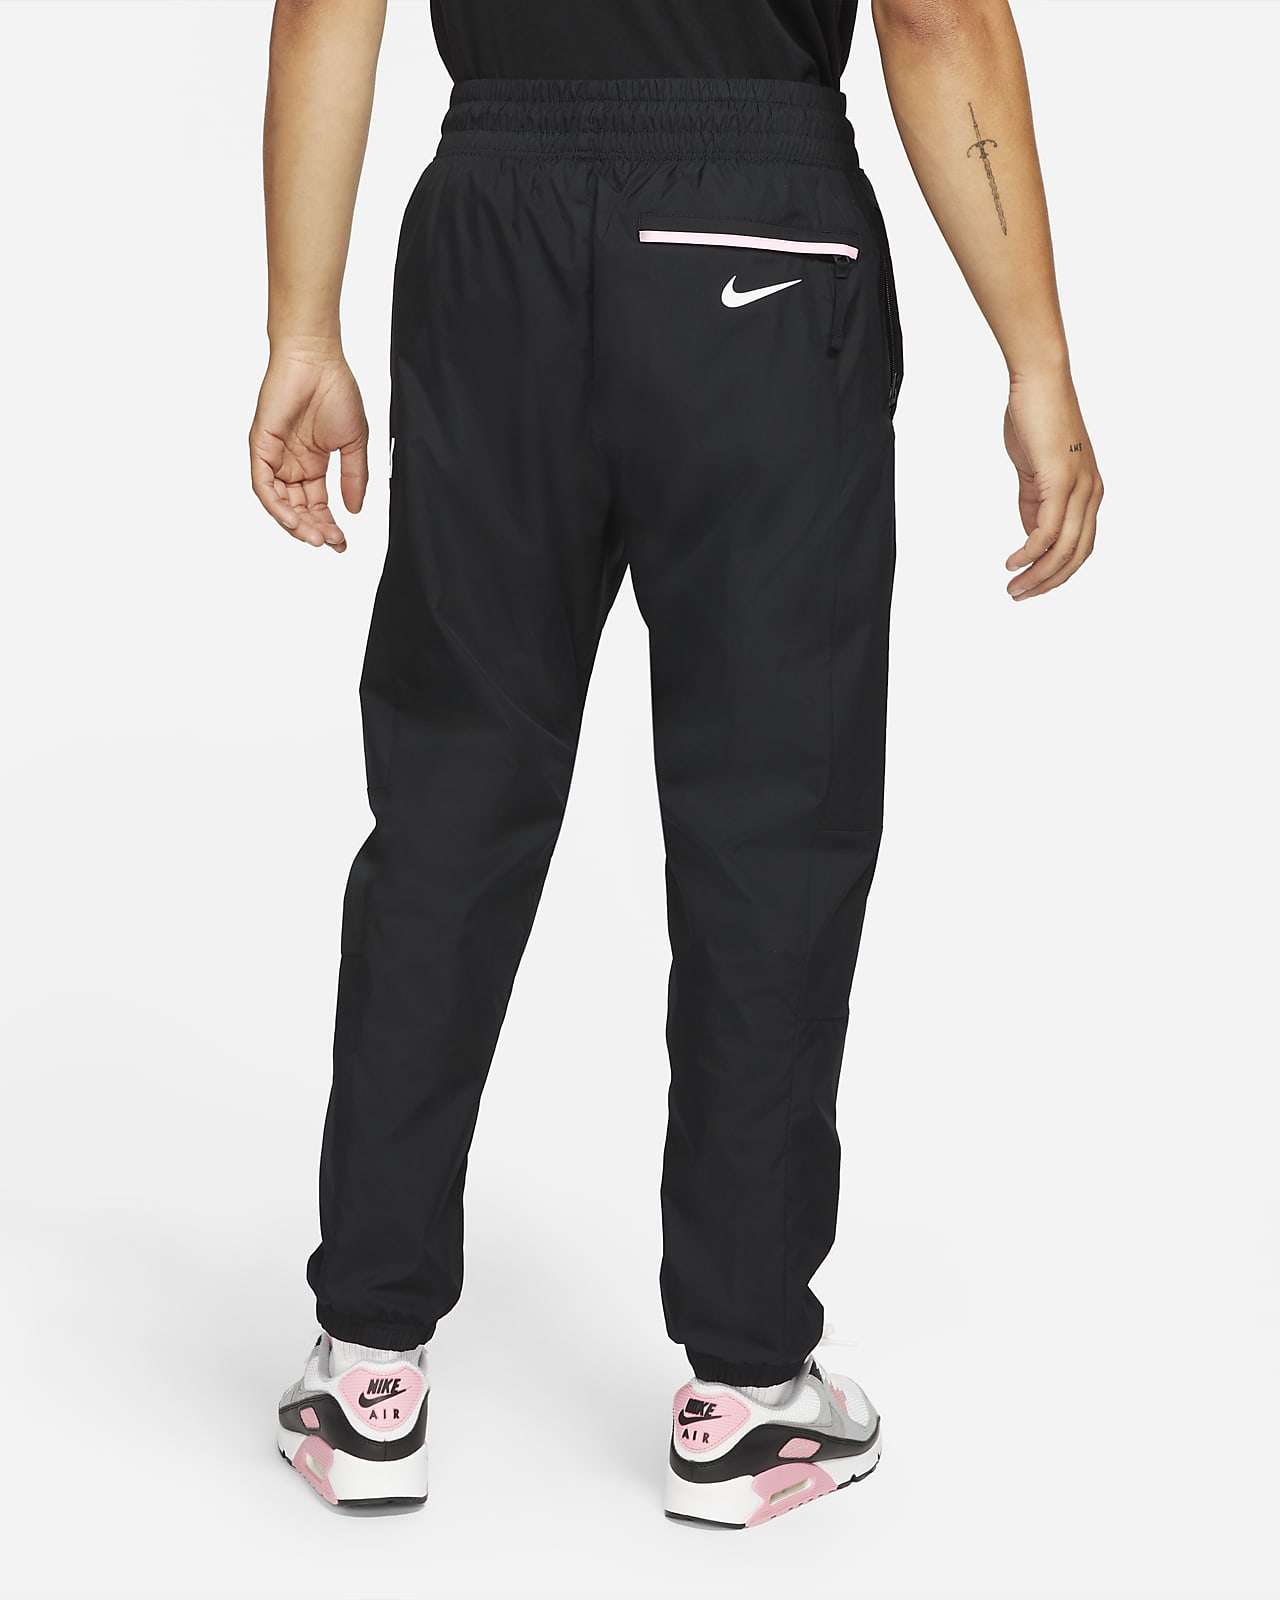 Uitdrukkelijk evenwicht Over instelling Paris Saint-Germain Men's Woven Pants. Nike GB